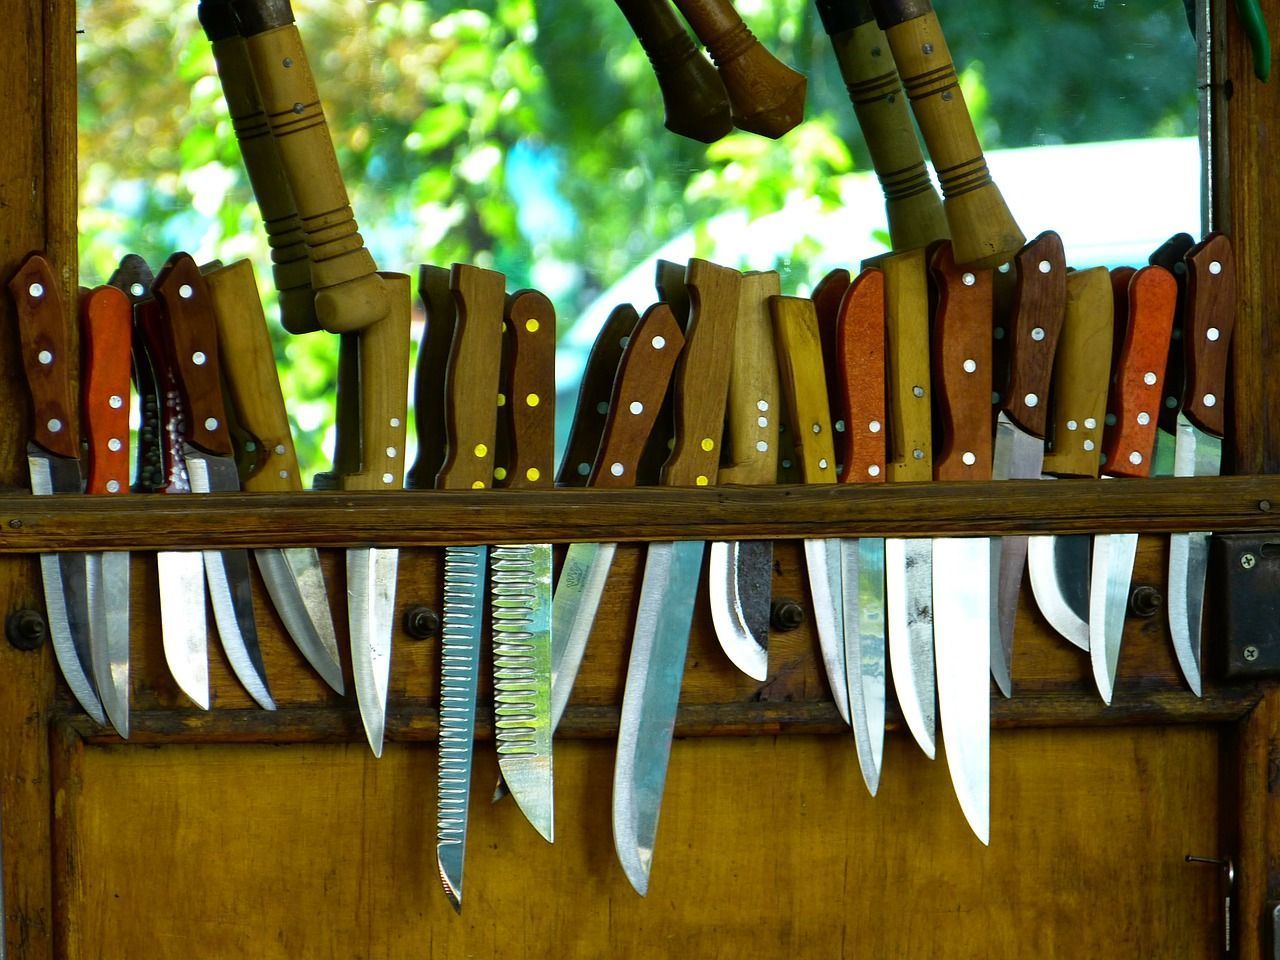 Um Teichpflanzen wie Schilf oder Winterschachtelhalm zu schneiden, brauchen Sie ein sehr scharfes Messer. So geht die Arbeit leichter.